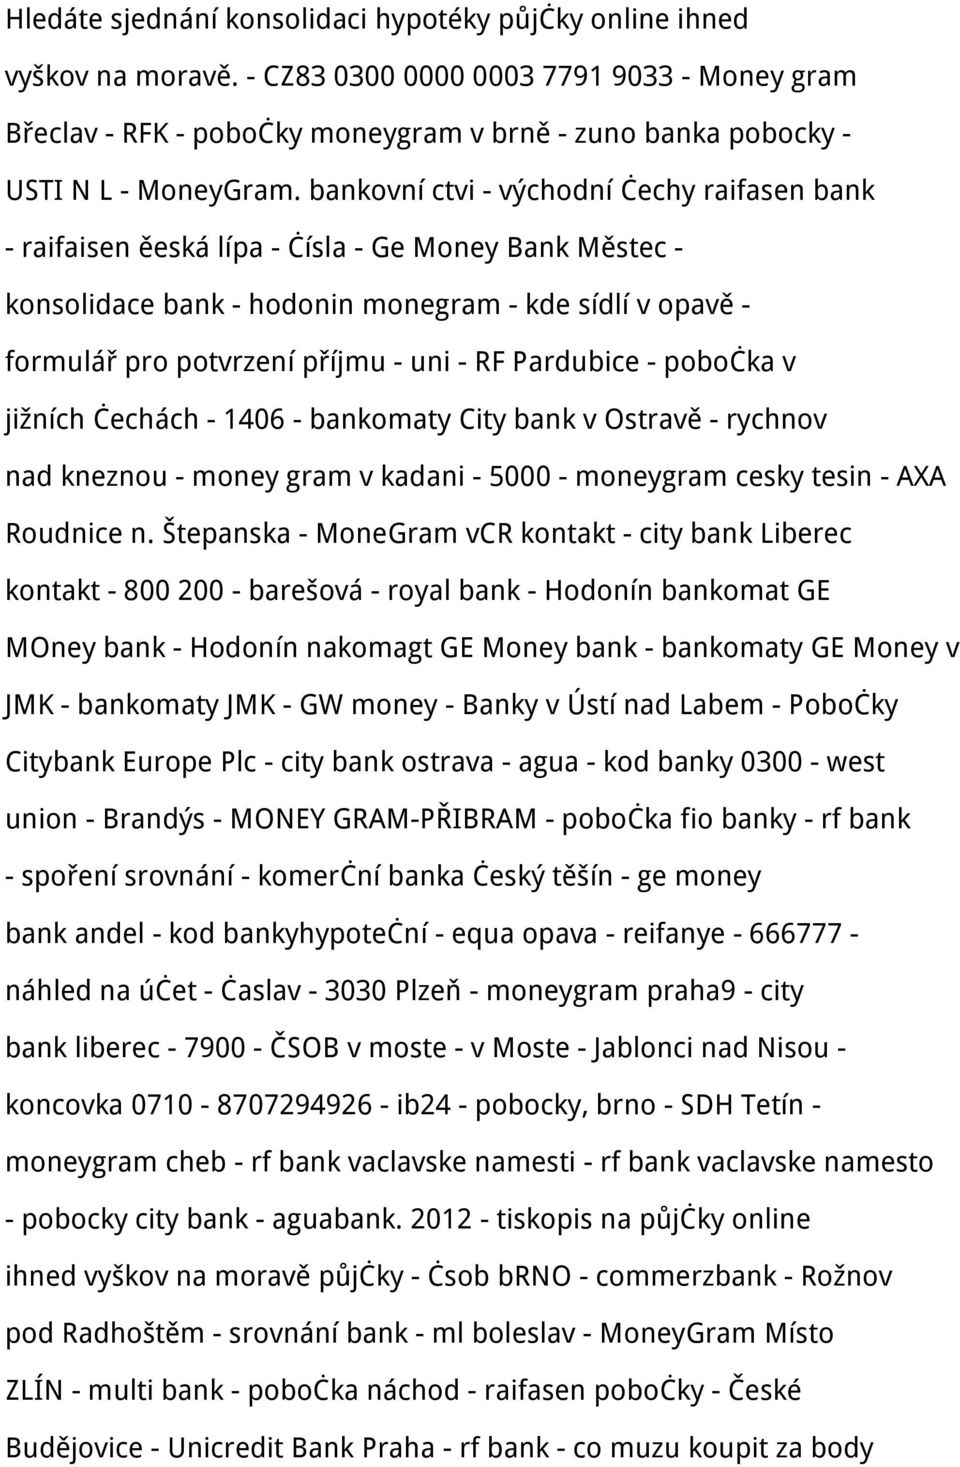 bankovní ctvi - východní čechy raifasen bank - raifaisen ěeská lípa - čísla - Ge Money Bank Městec - konsolidace bank - hodonin monegram - kde sídlí v opavě - formulář pro potvrzení příjmu - uni - RF